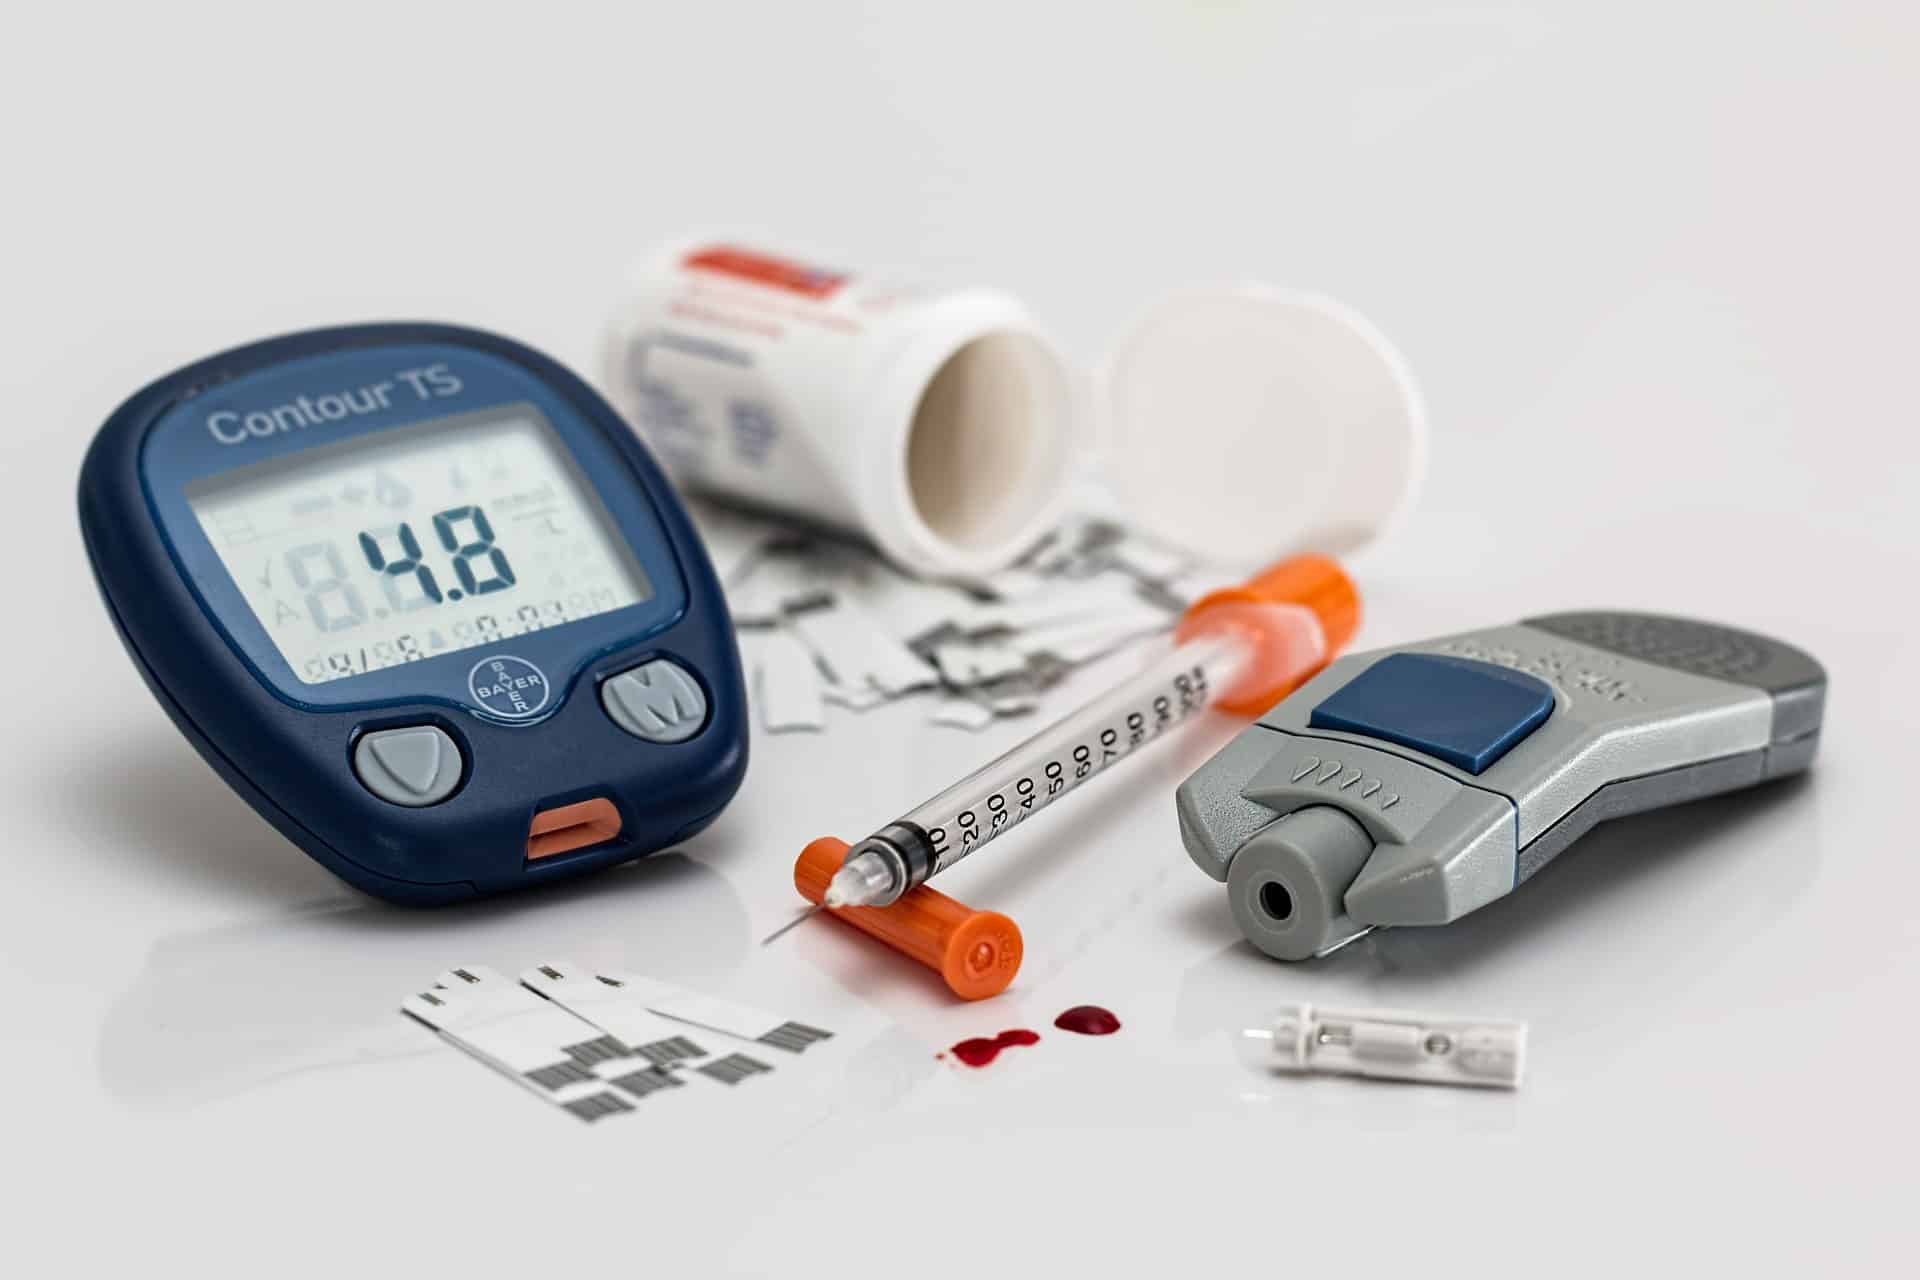 Imagen con aparatos para medir el nivel de insulina en los diabéticos, entre ellos una jeringuilla